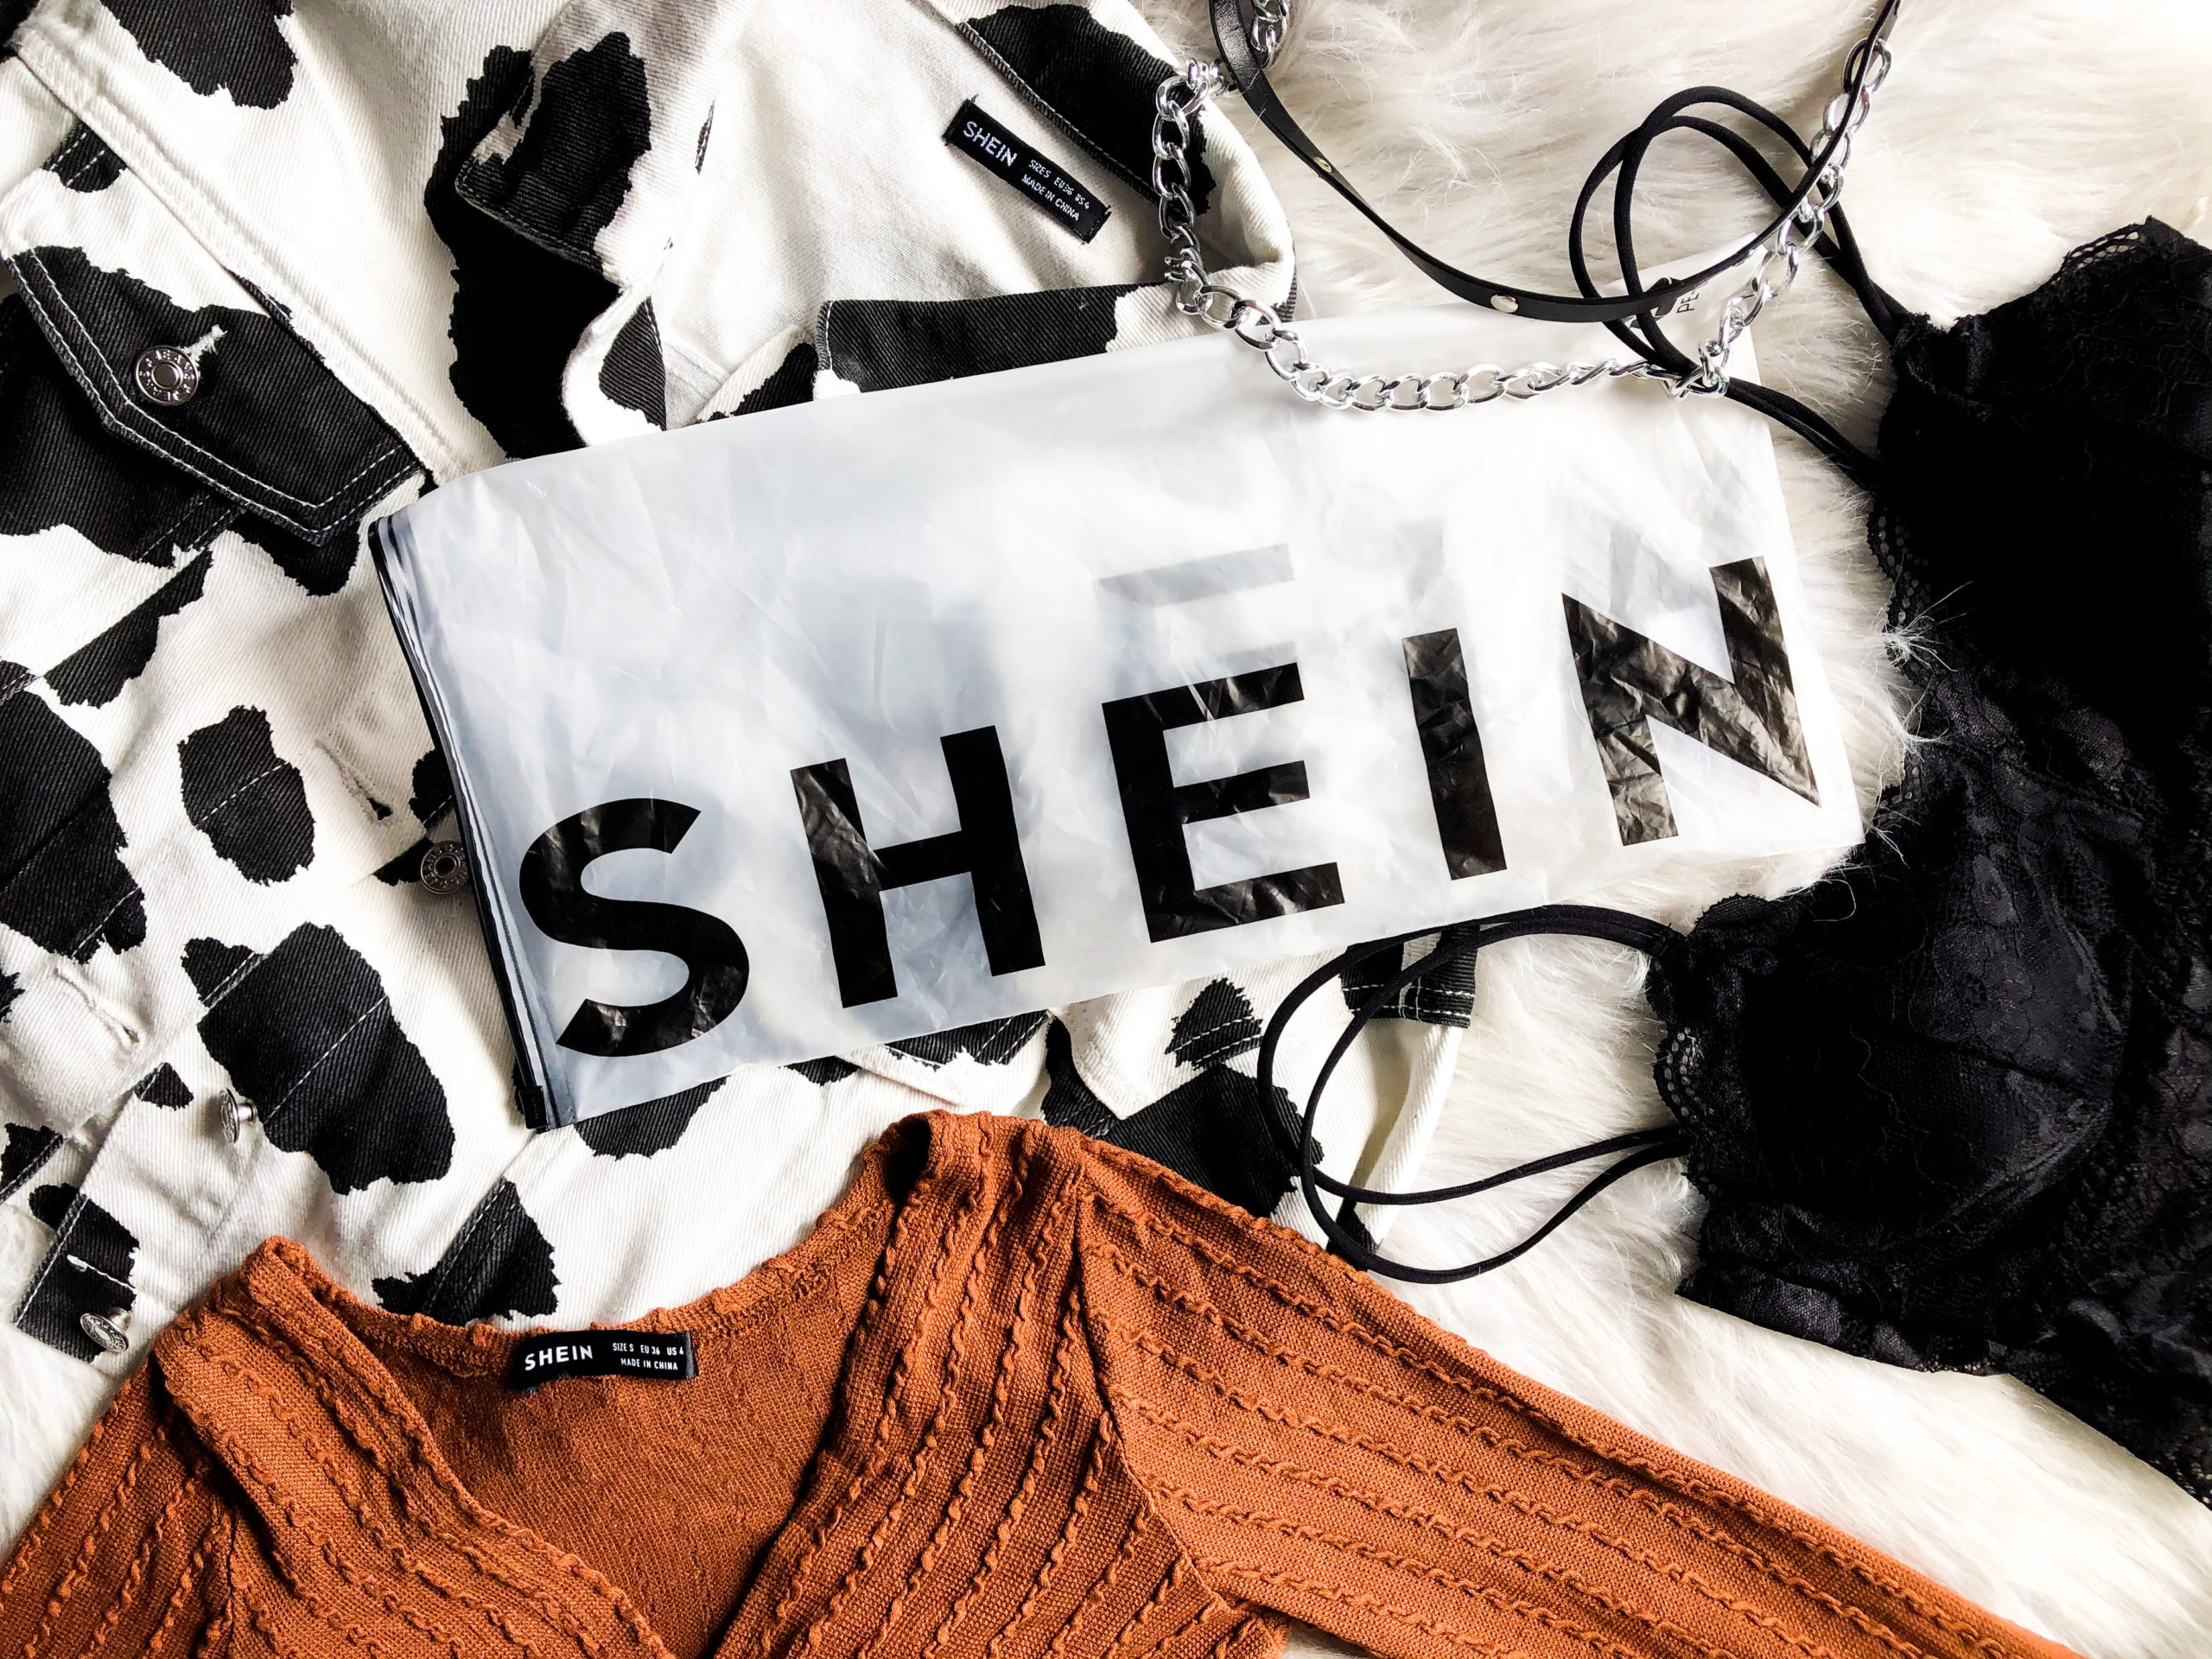 Indiener blootstelling hek Is Shein betrouwbaar? Mijn ervaring in deze Shein review! 